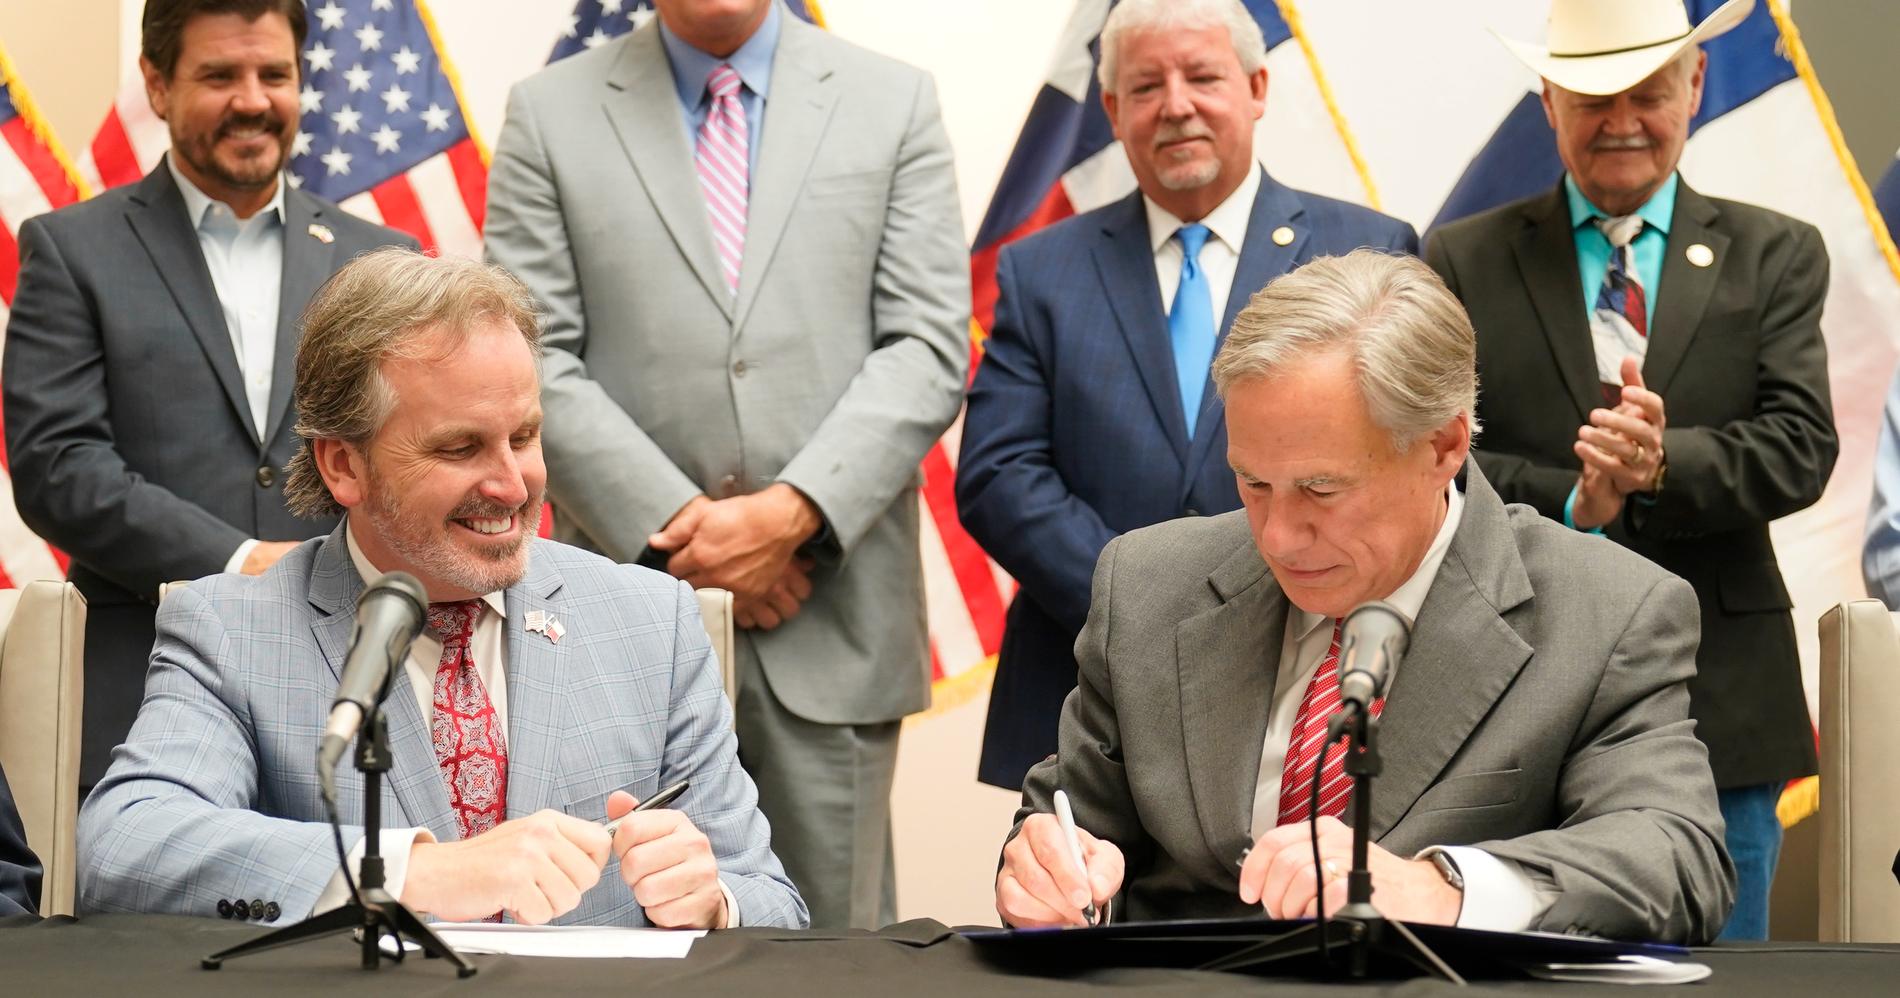 Texas guvernör Greg Abbott (till höger) signerade den nya lagen ”Bill 1” den 7 september.